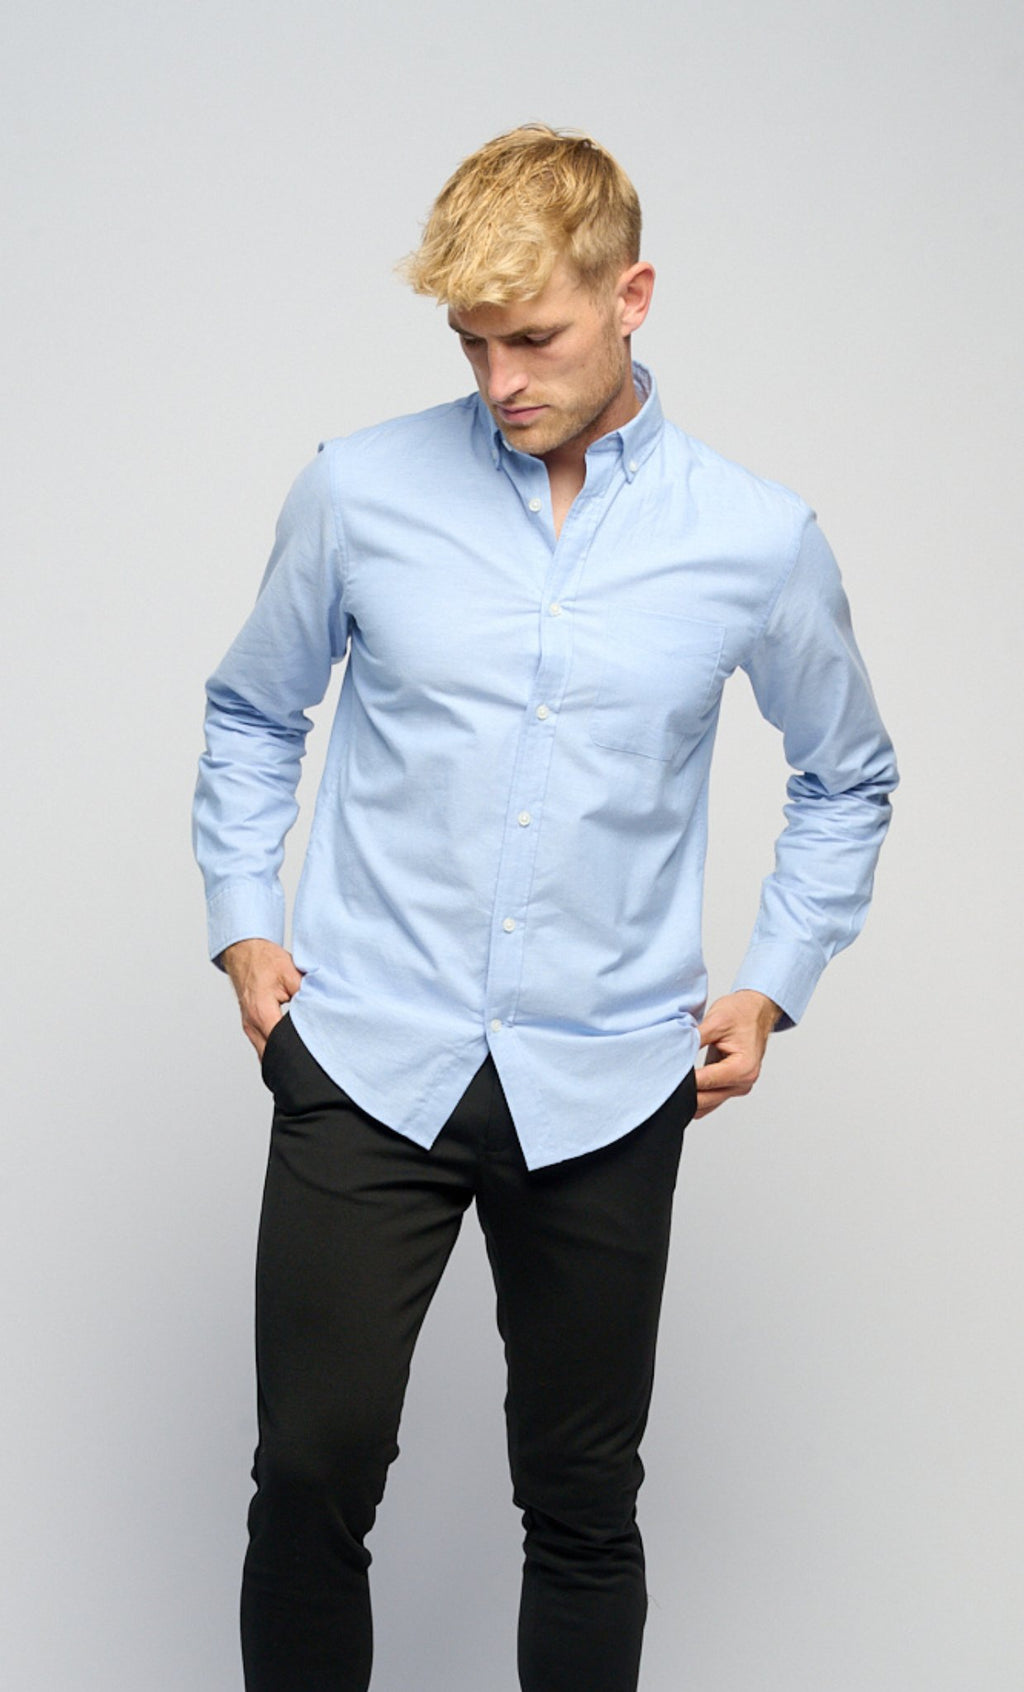 The Original Performance Oksfordo marškinėliai ™ ️ - kašmyro mėlyna spalva